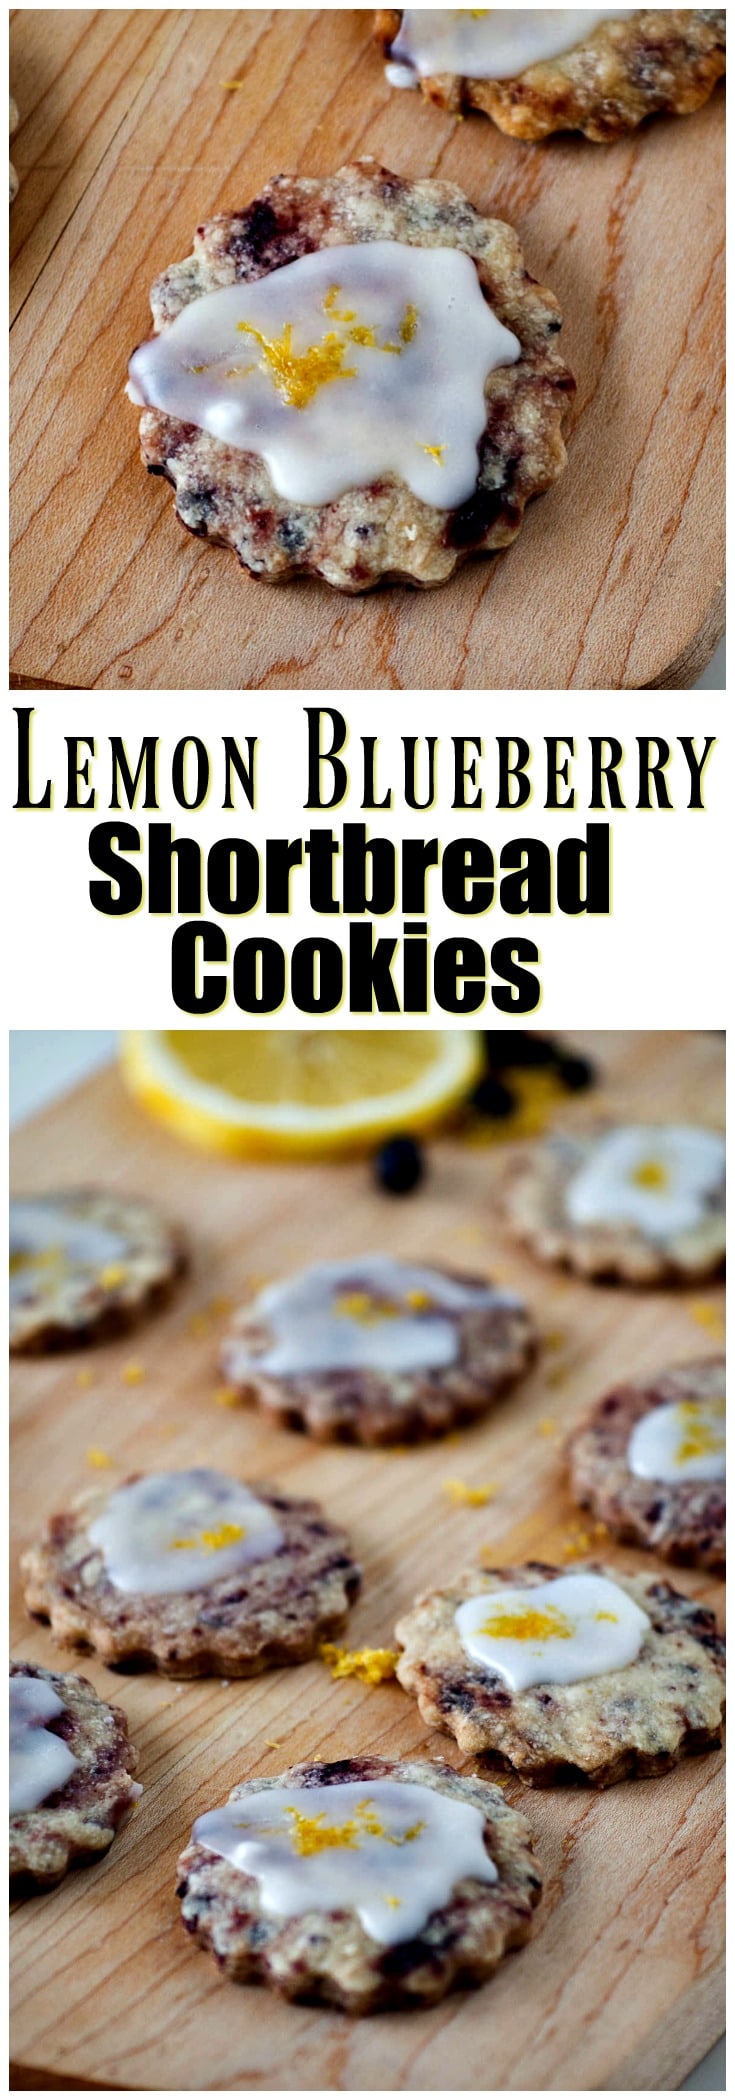 Lemon blueberry shortbread cookies.